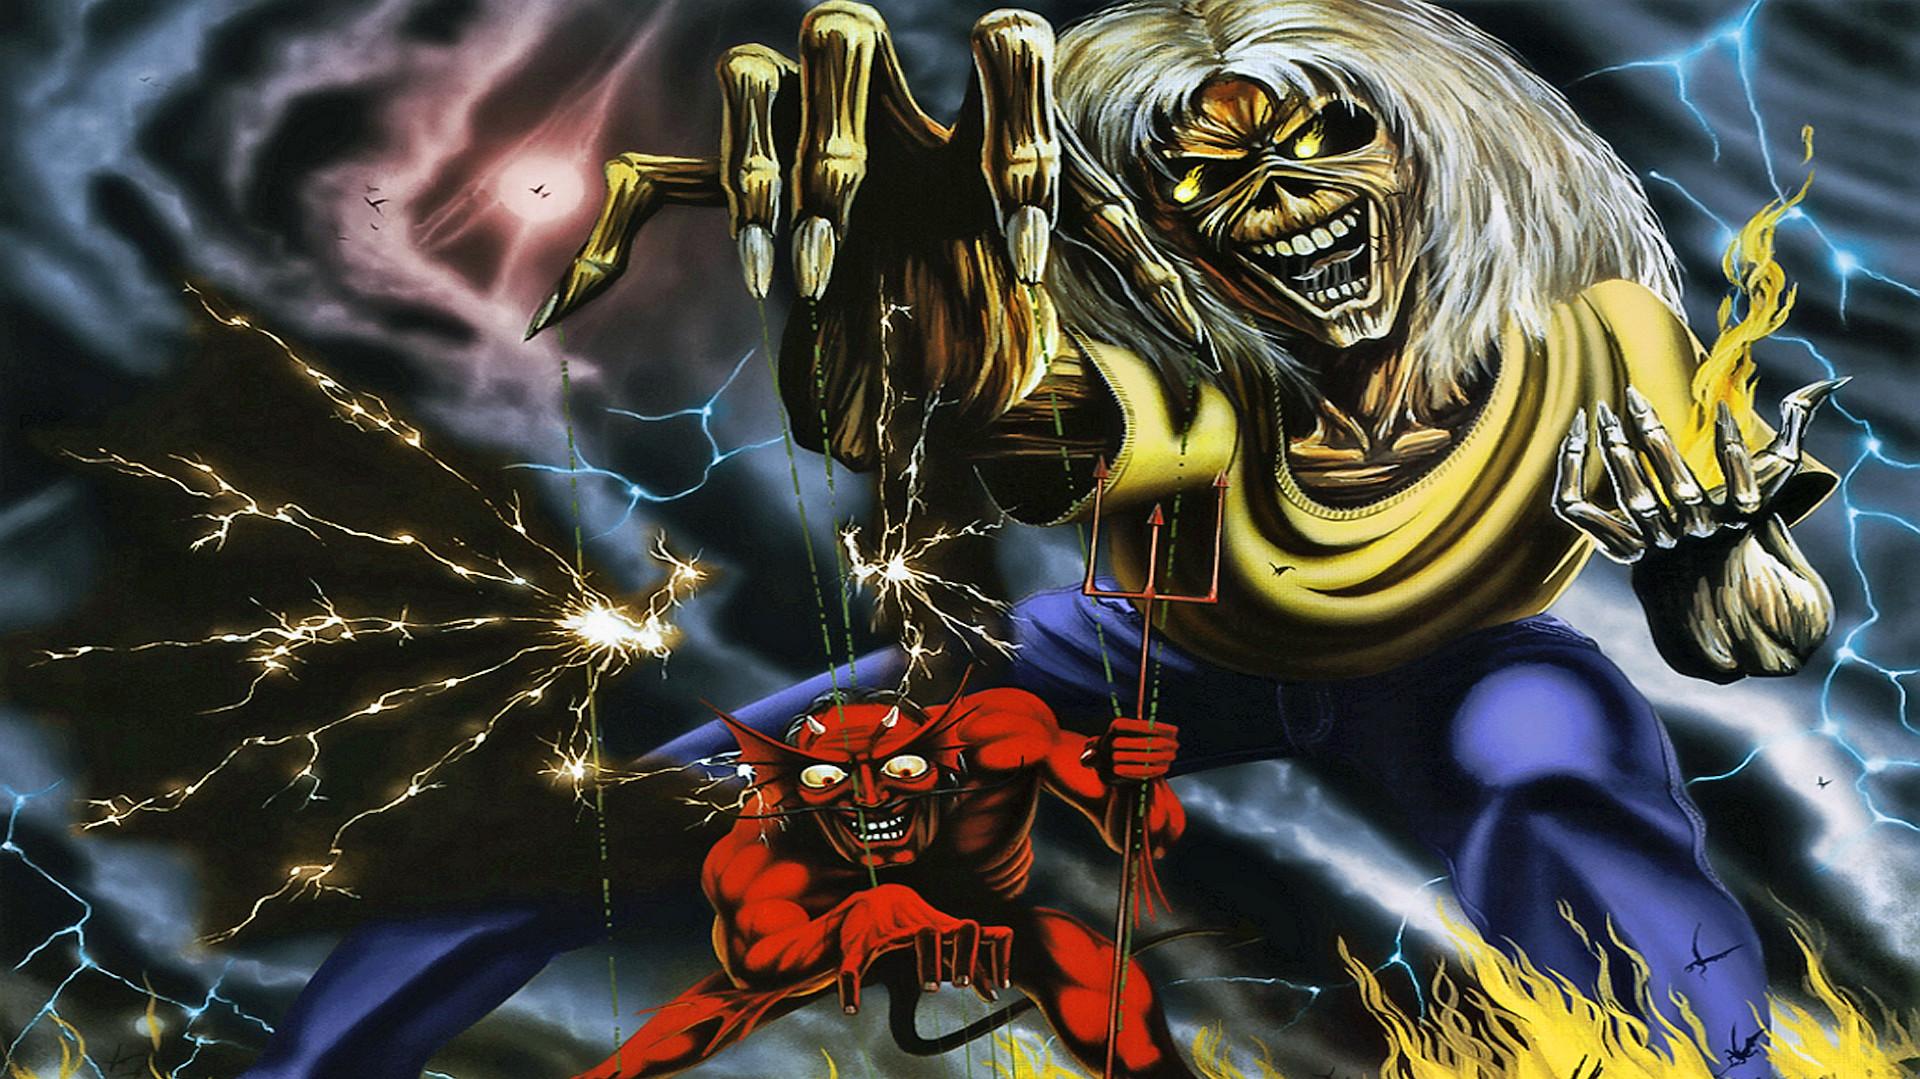 Iron Maiden Heavy Metal Dark Album Cover Eddie Fs Wallpaper